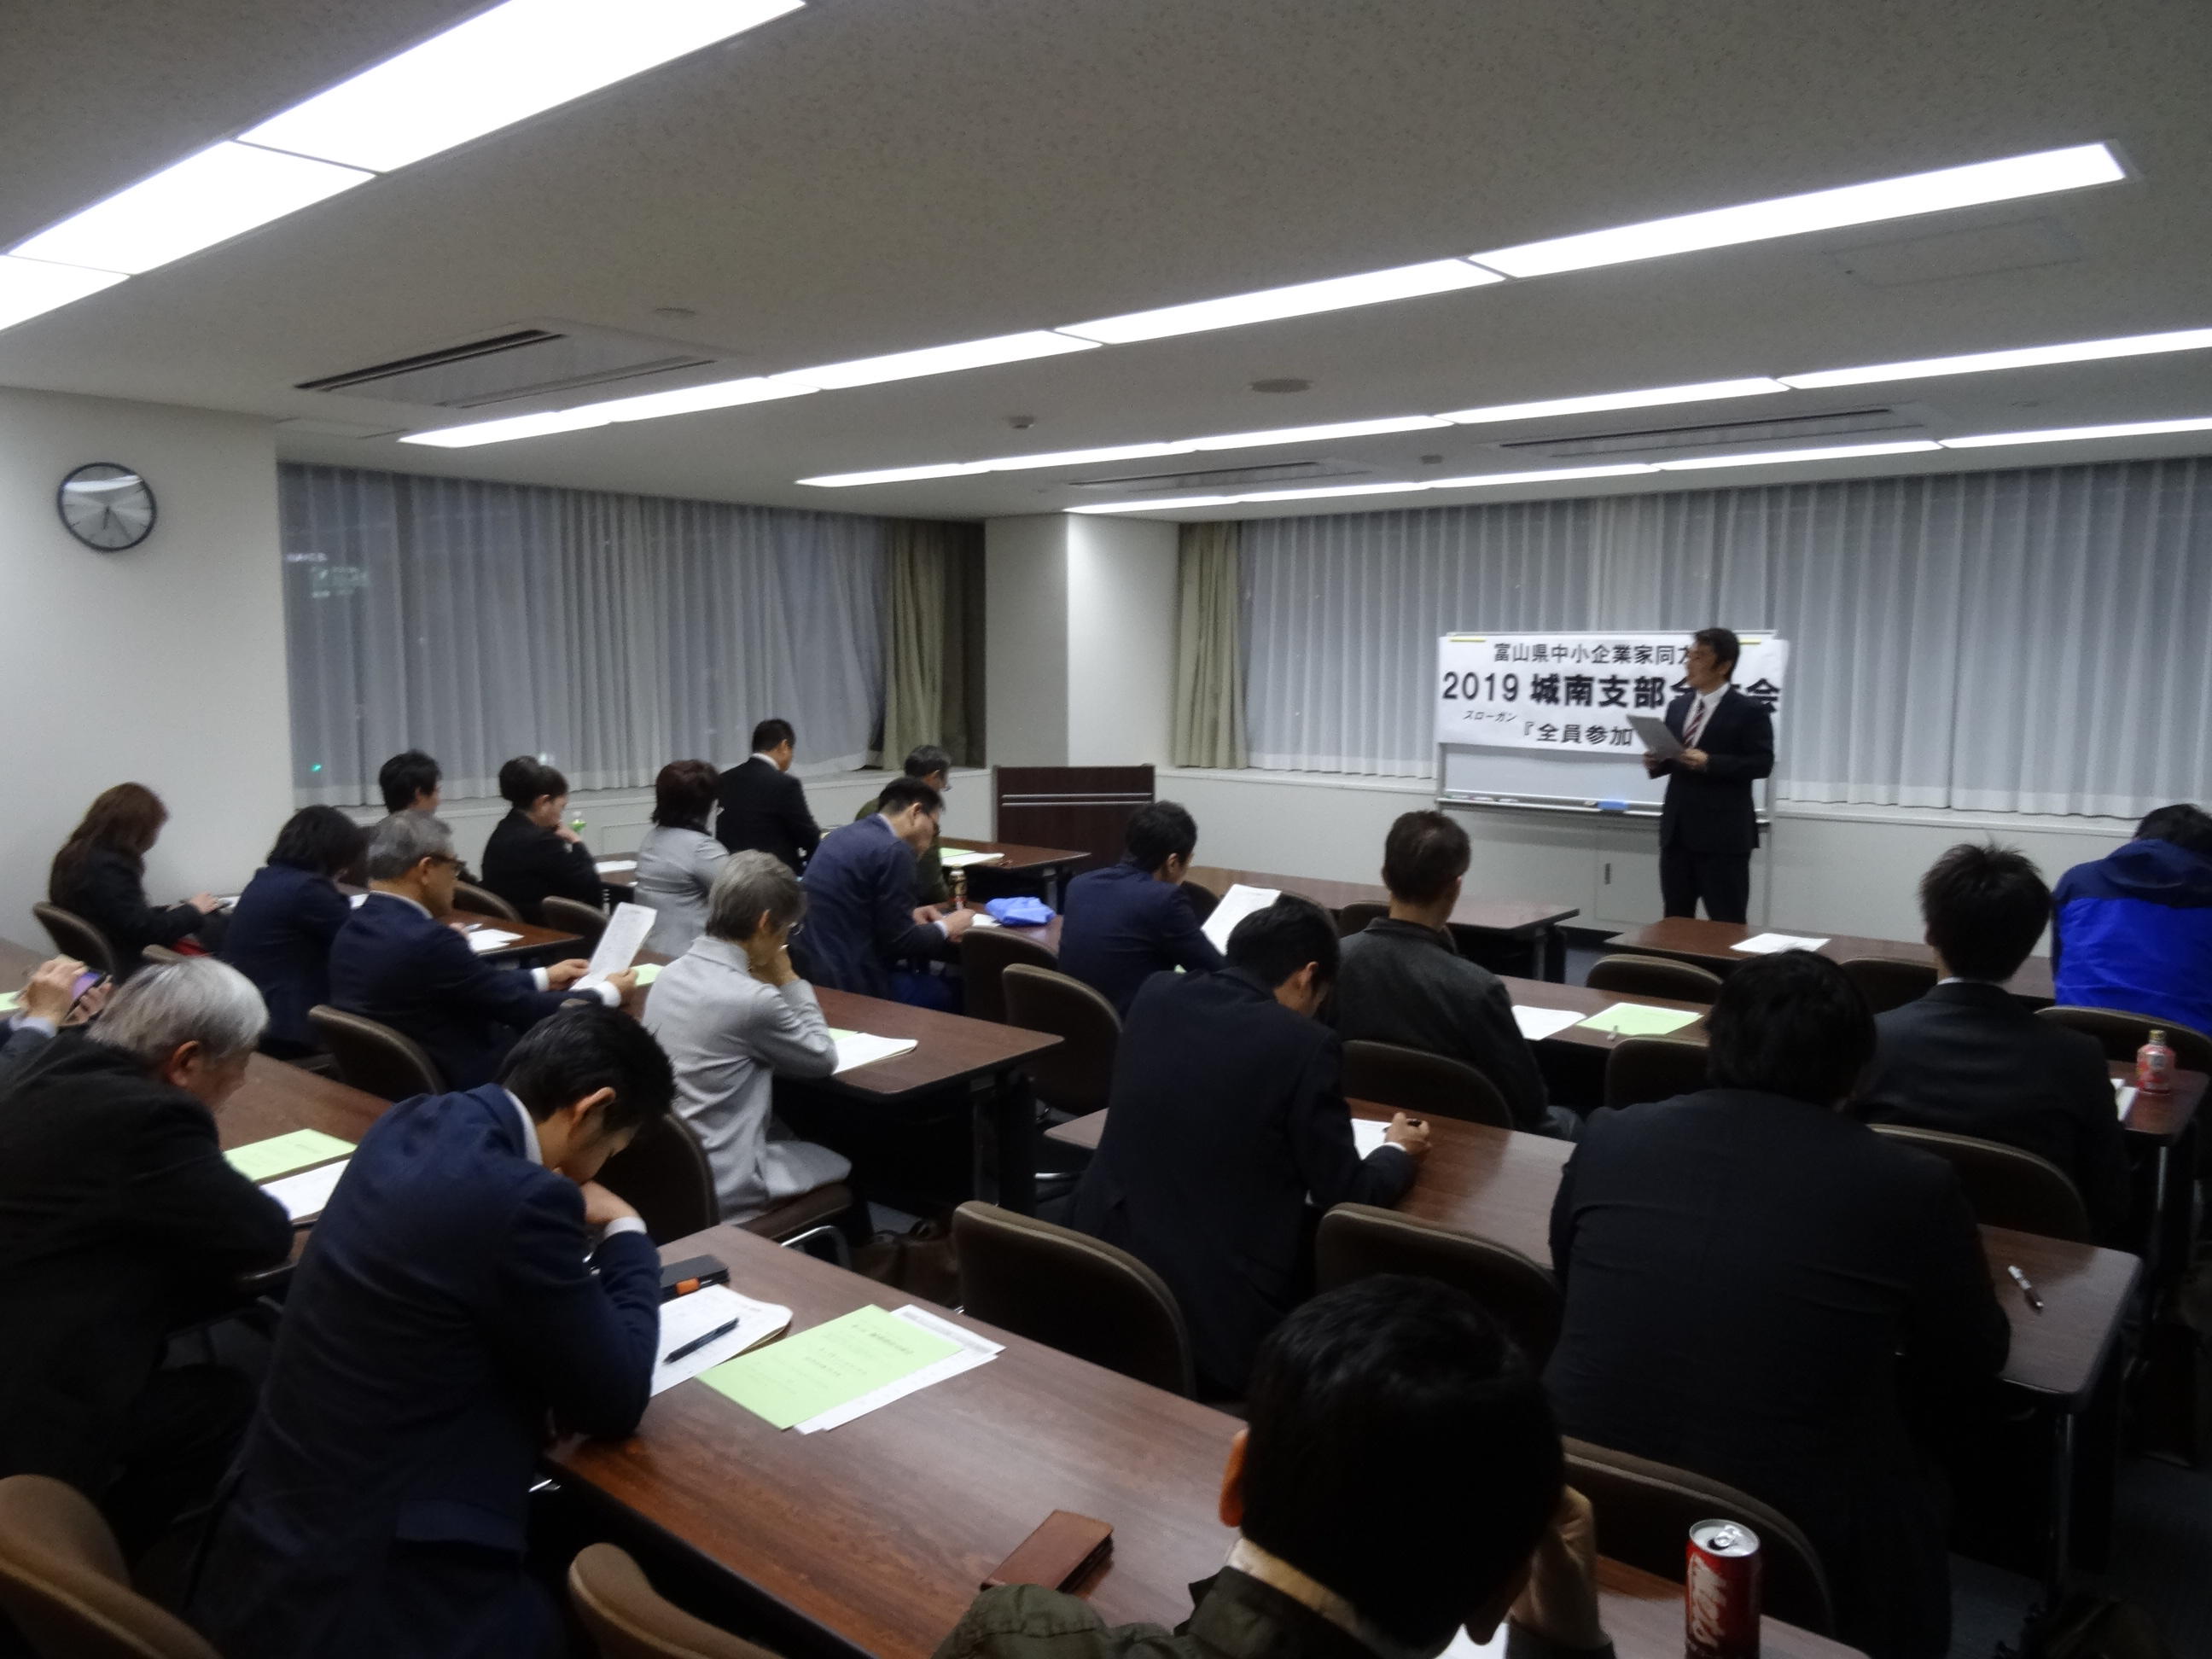 平成31年 4月 6日（土）に富山県民会館で行われました 城南支部全体会が行われました。